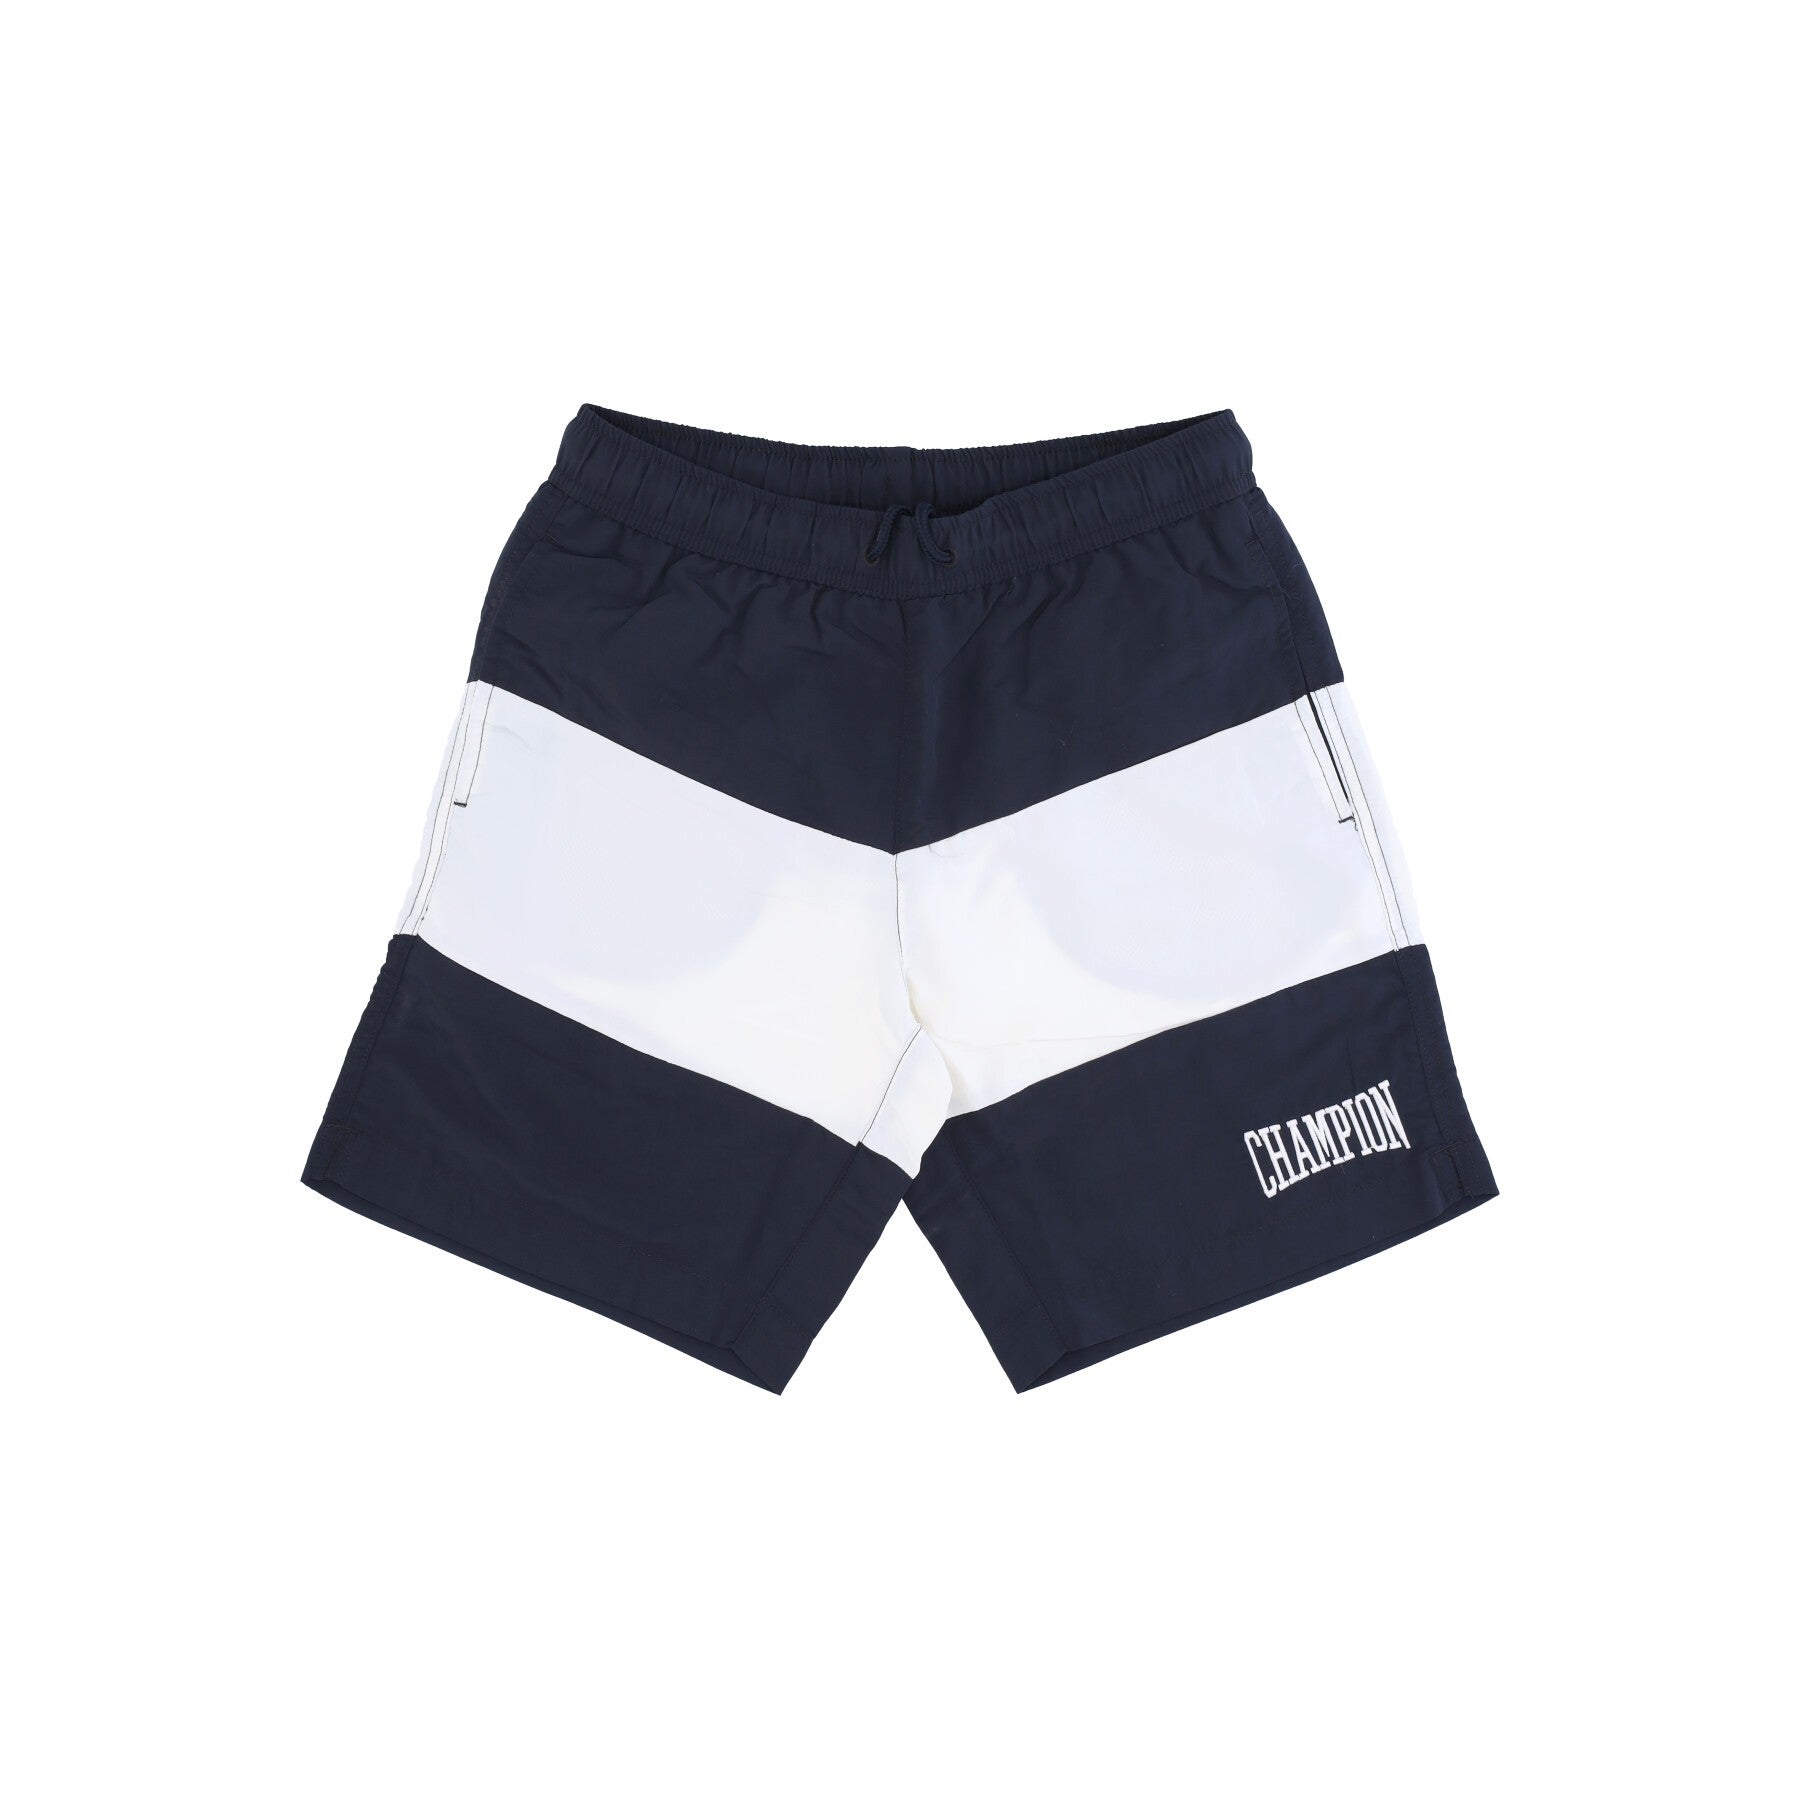 Men's Beachshort Swim Shorts Graphite/white